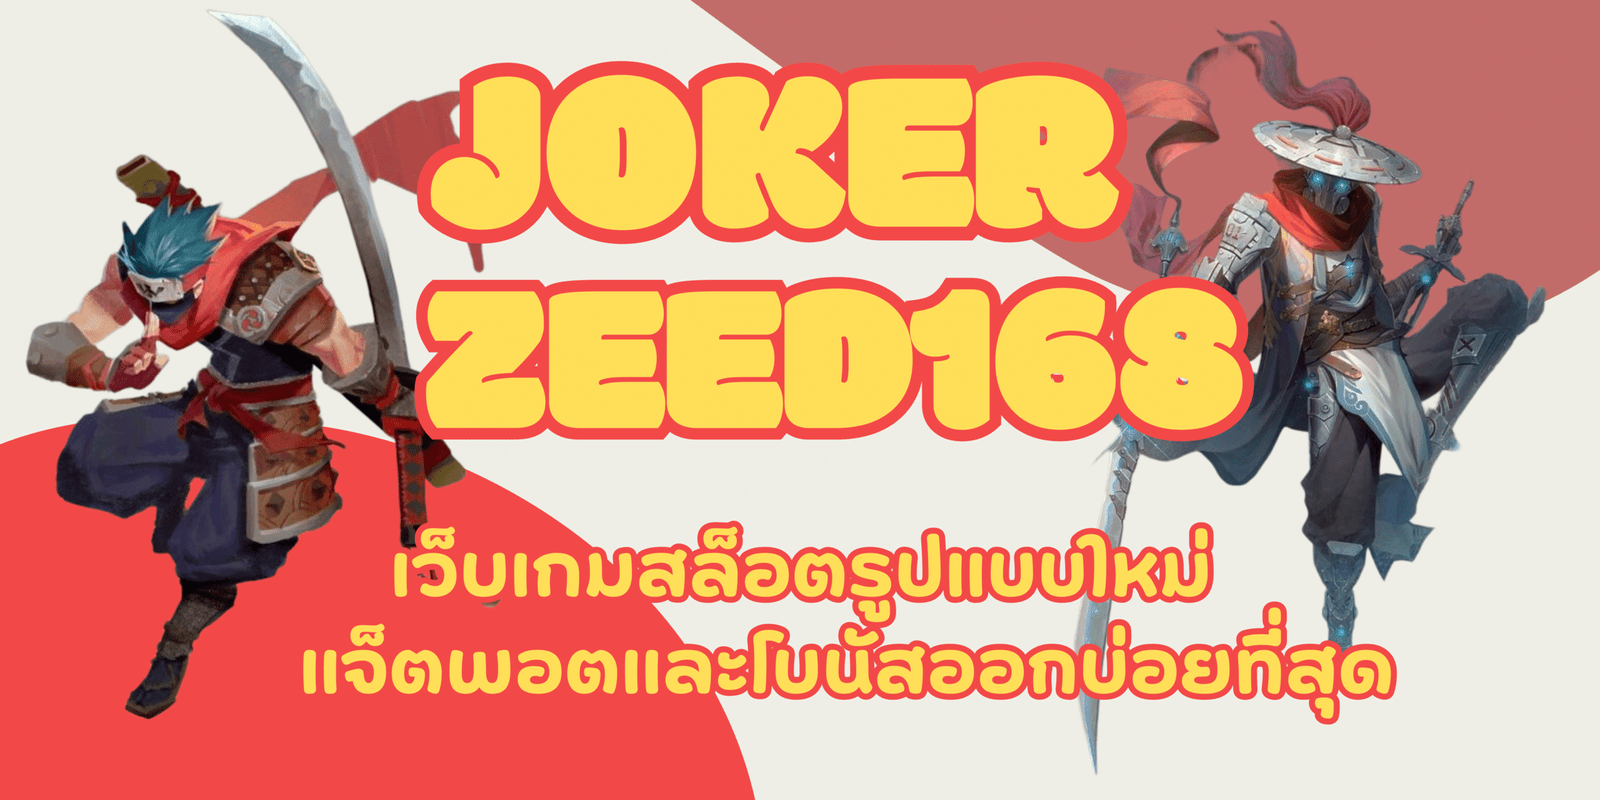 joker-zeed168-สมัครสมาชิก